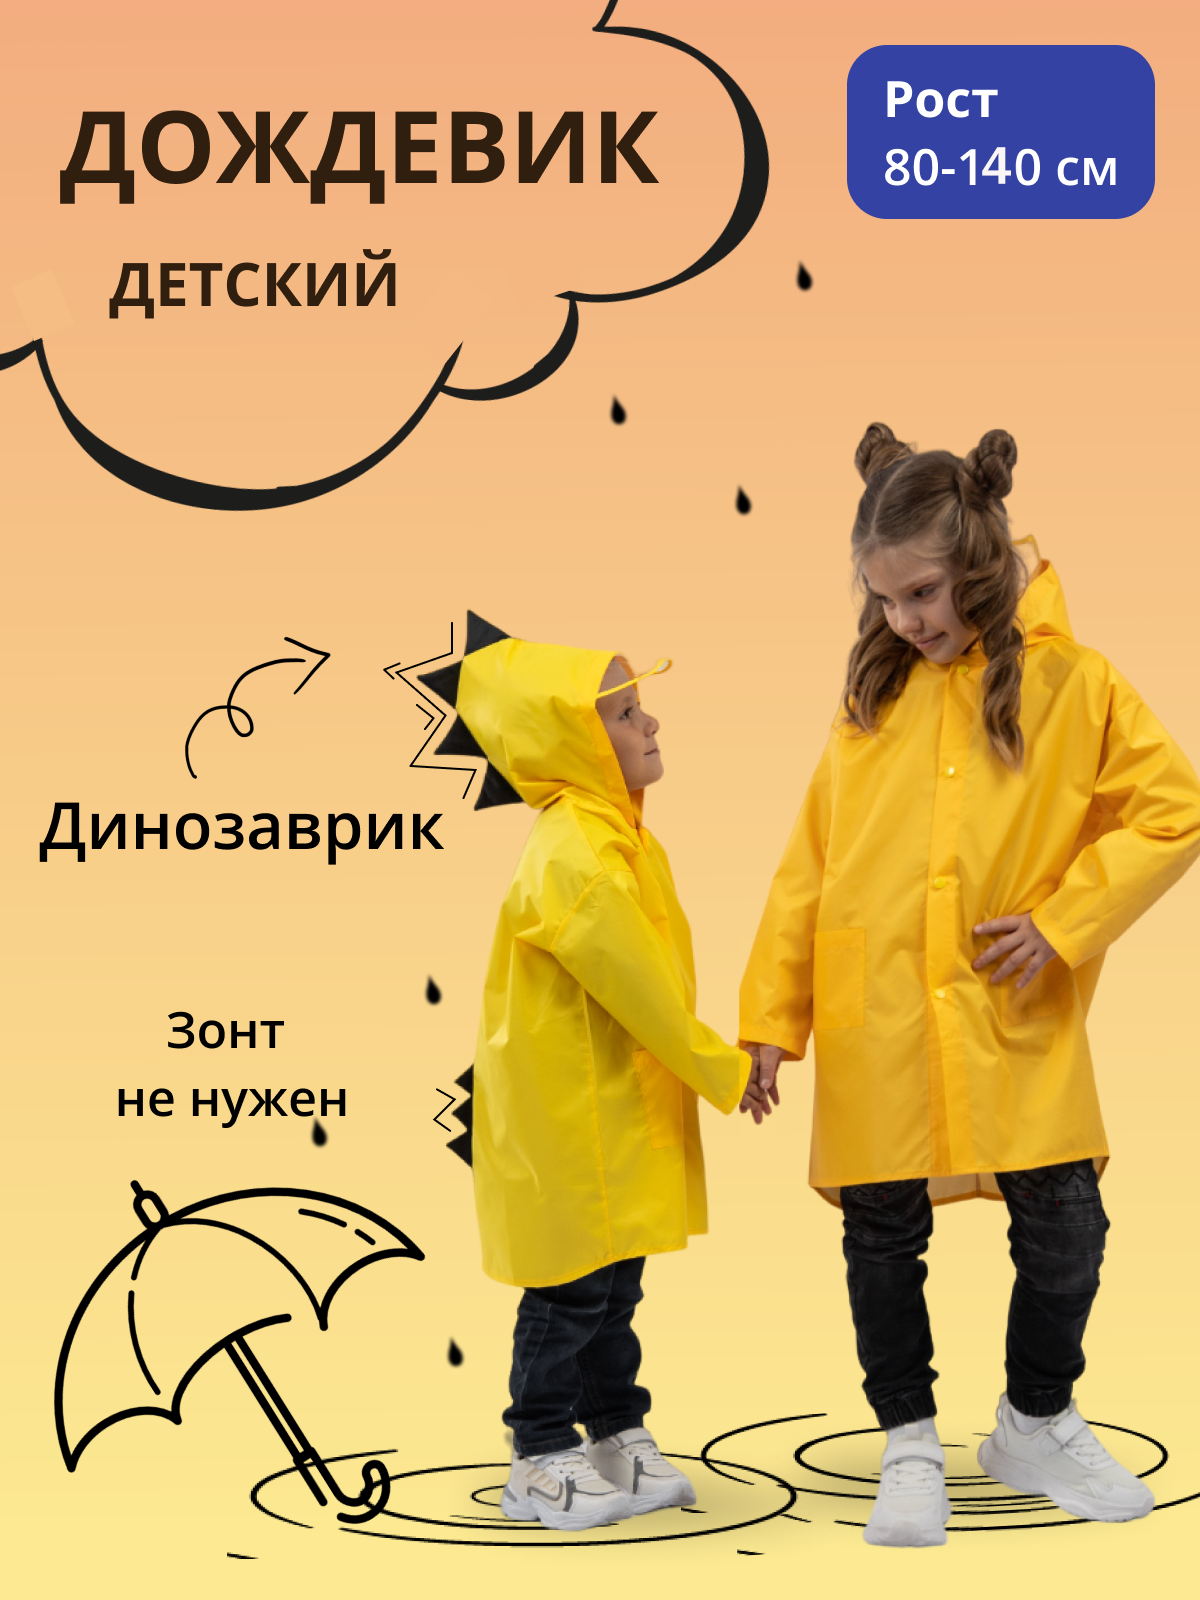 Дождевик детский Под дождем 122855956, желтый, 80